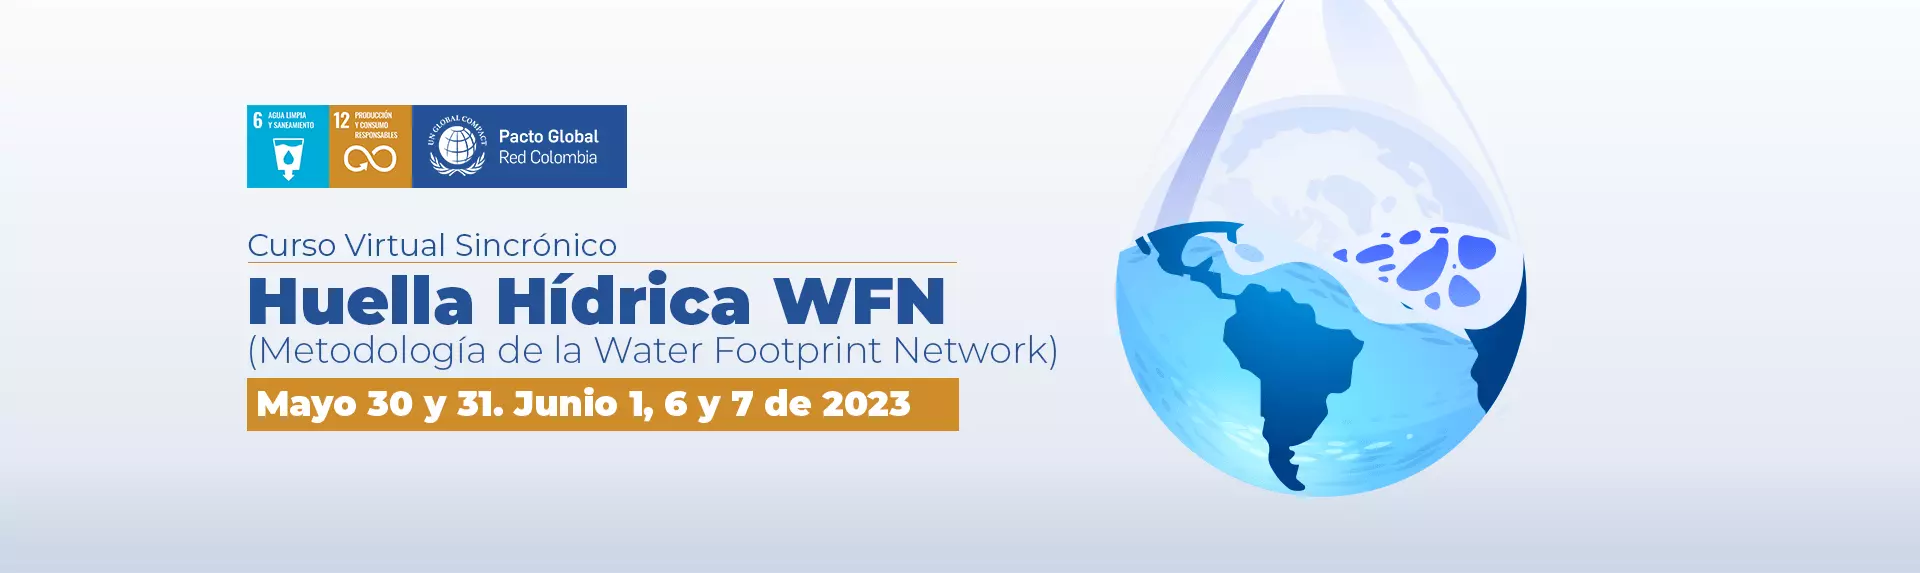 Huella Hídrica WFN (Metodología de la Water Footprint Network)